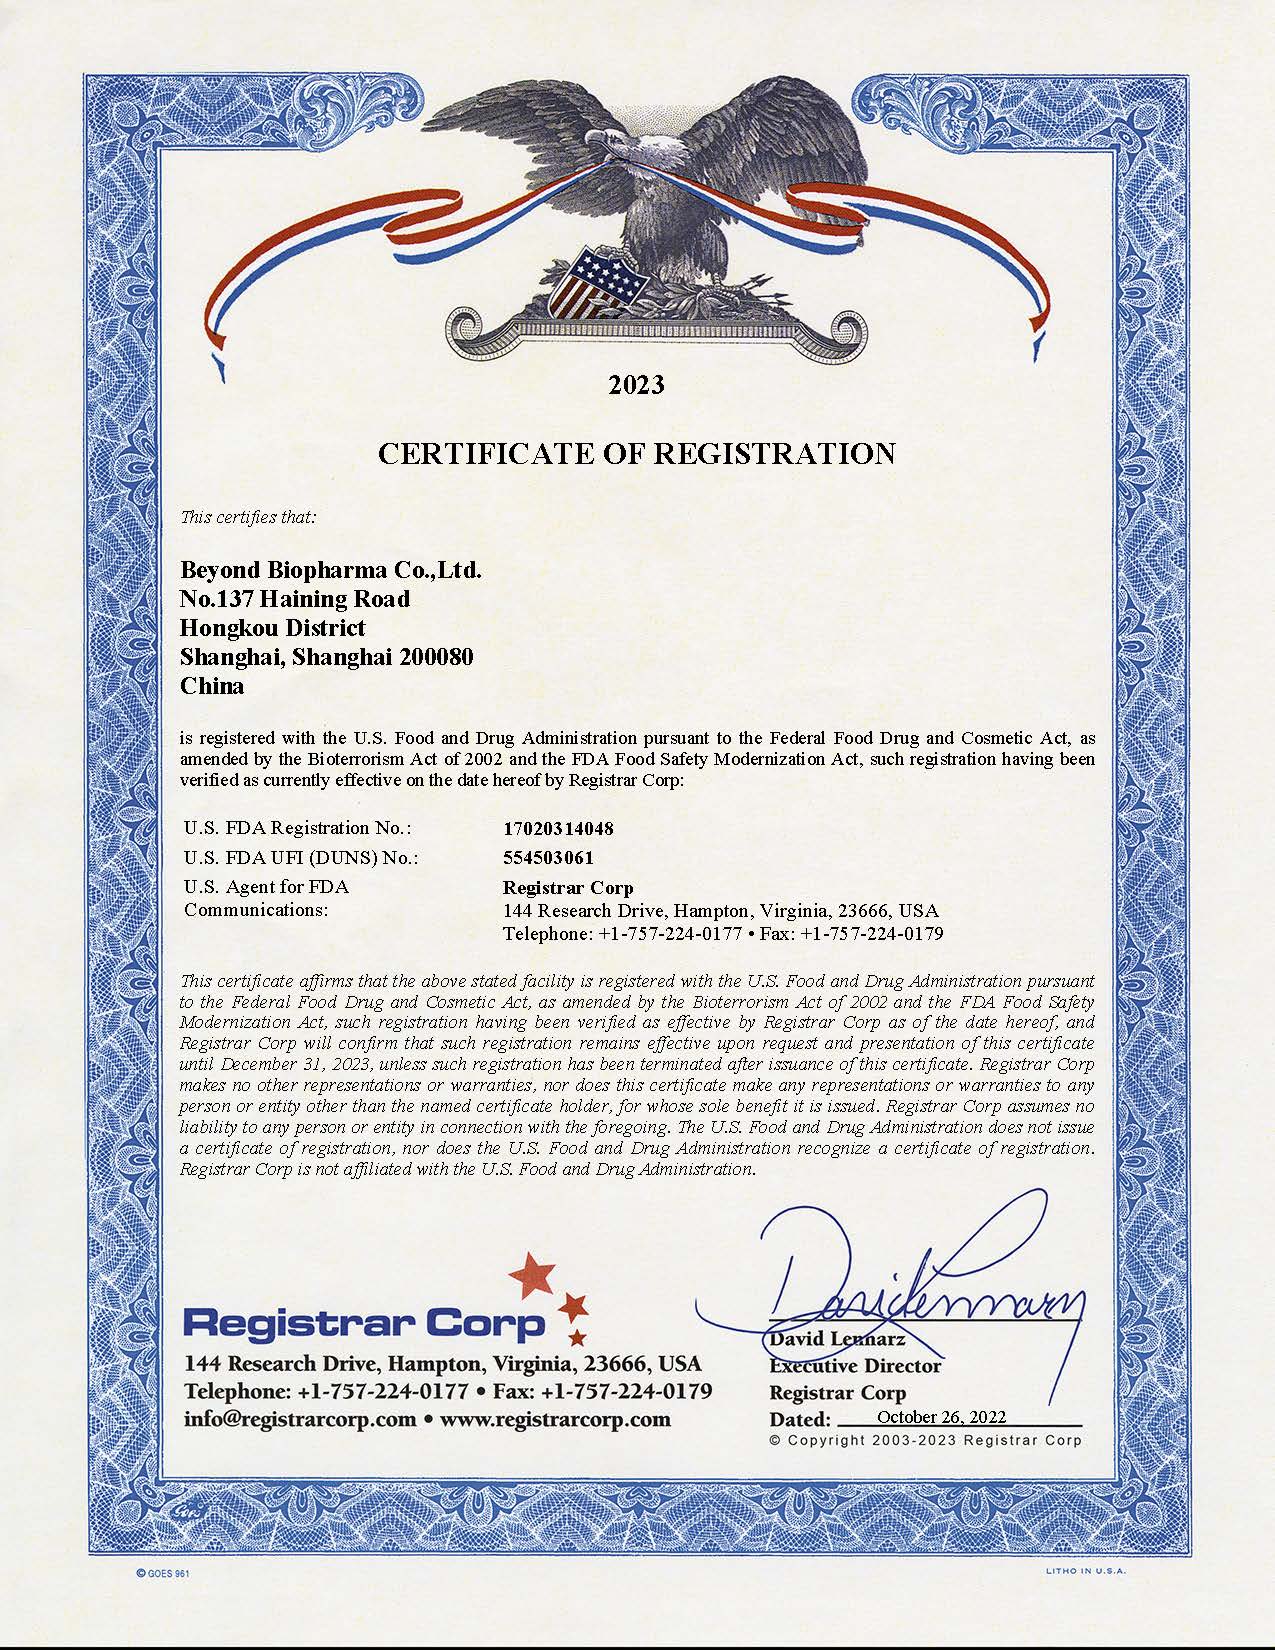 Καλα ΝΕΑ!Beyond Biopharma Co., Ltd. Ενημερώθηκε με επιτυχία το πιστοποιητικό εγγραφής του FDA των ΗΠΑ 2023!